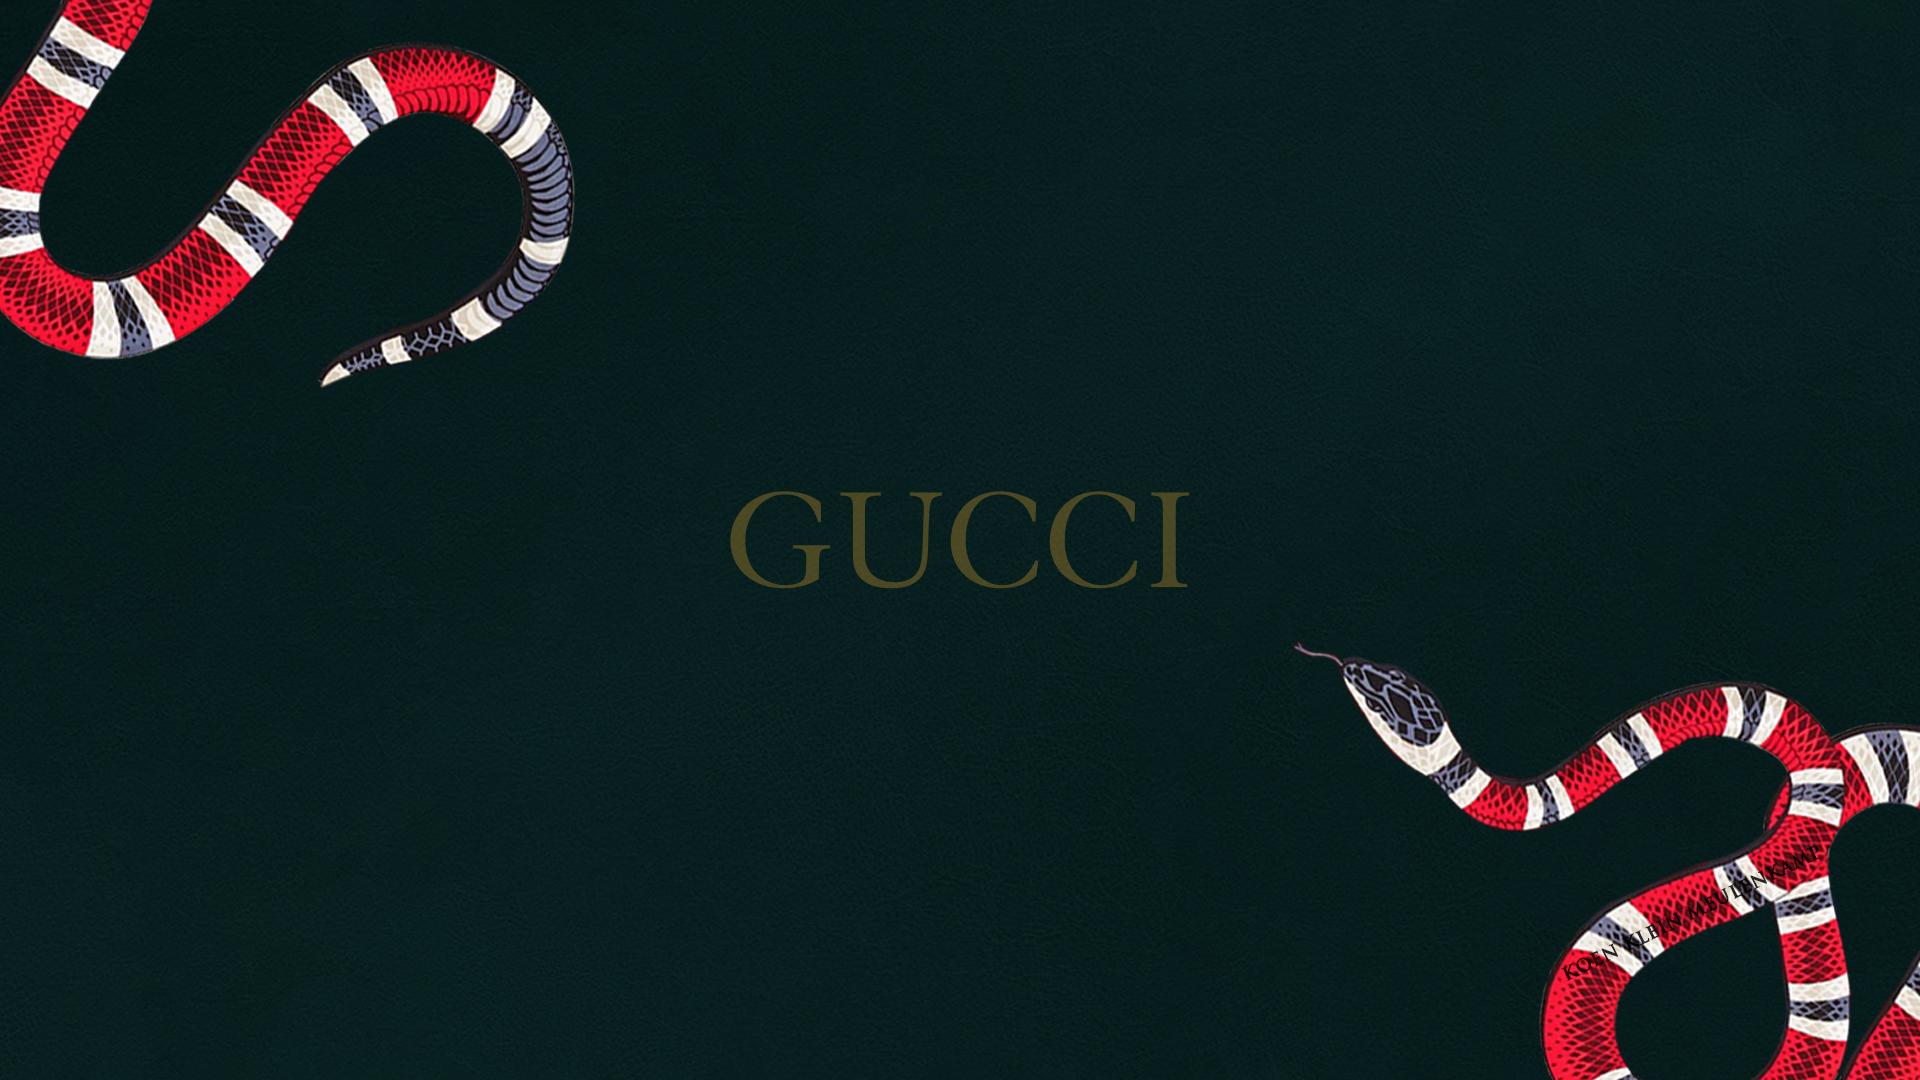 Gucci Wallpaper. Gucci Dope Wallpaper